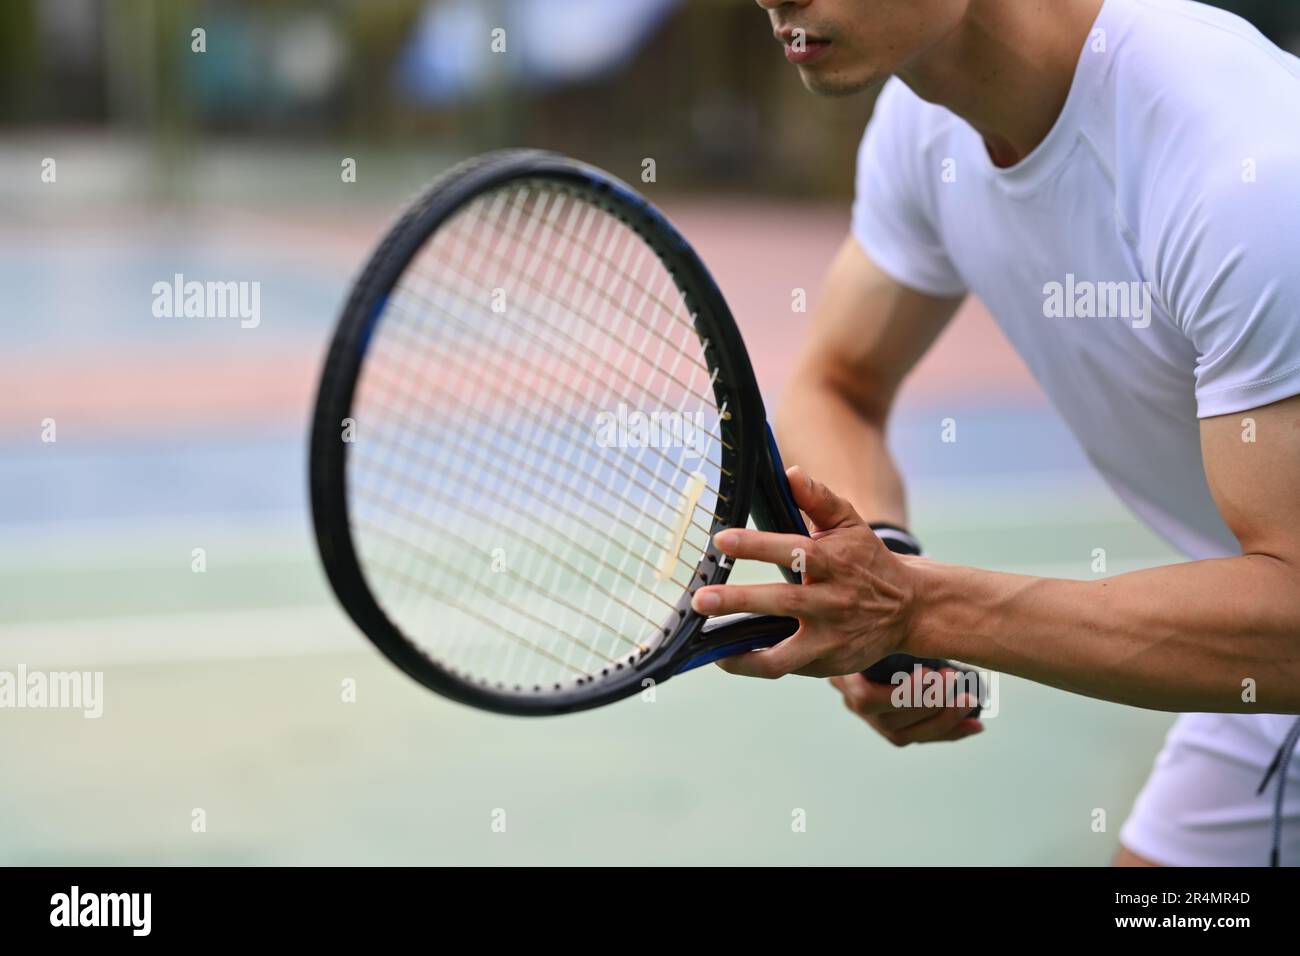 Un joueur de tennis masculin s'est concentré en position de prêt pour recevoir un service, s'exerçant pour la compétition sur un court Banque D'Images